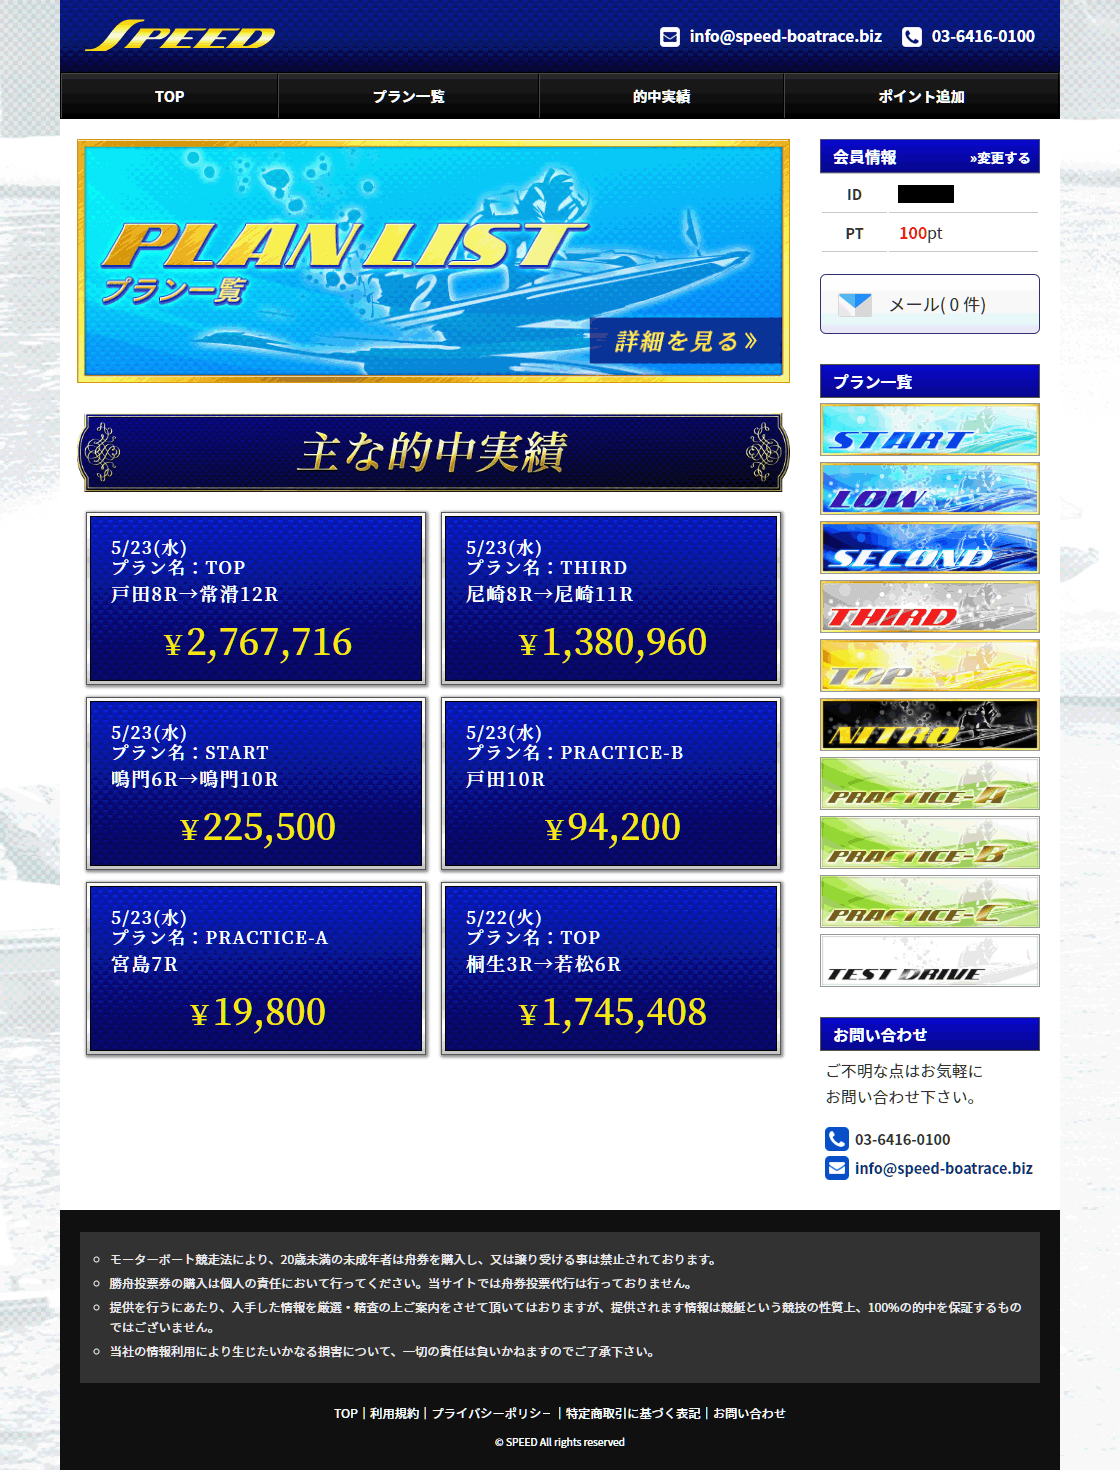 スピード (SPEED)という競艇予想サイト(ボートレース予想サイト)の会員ページ